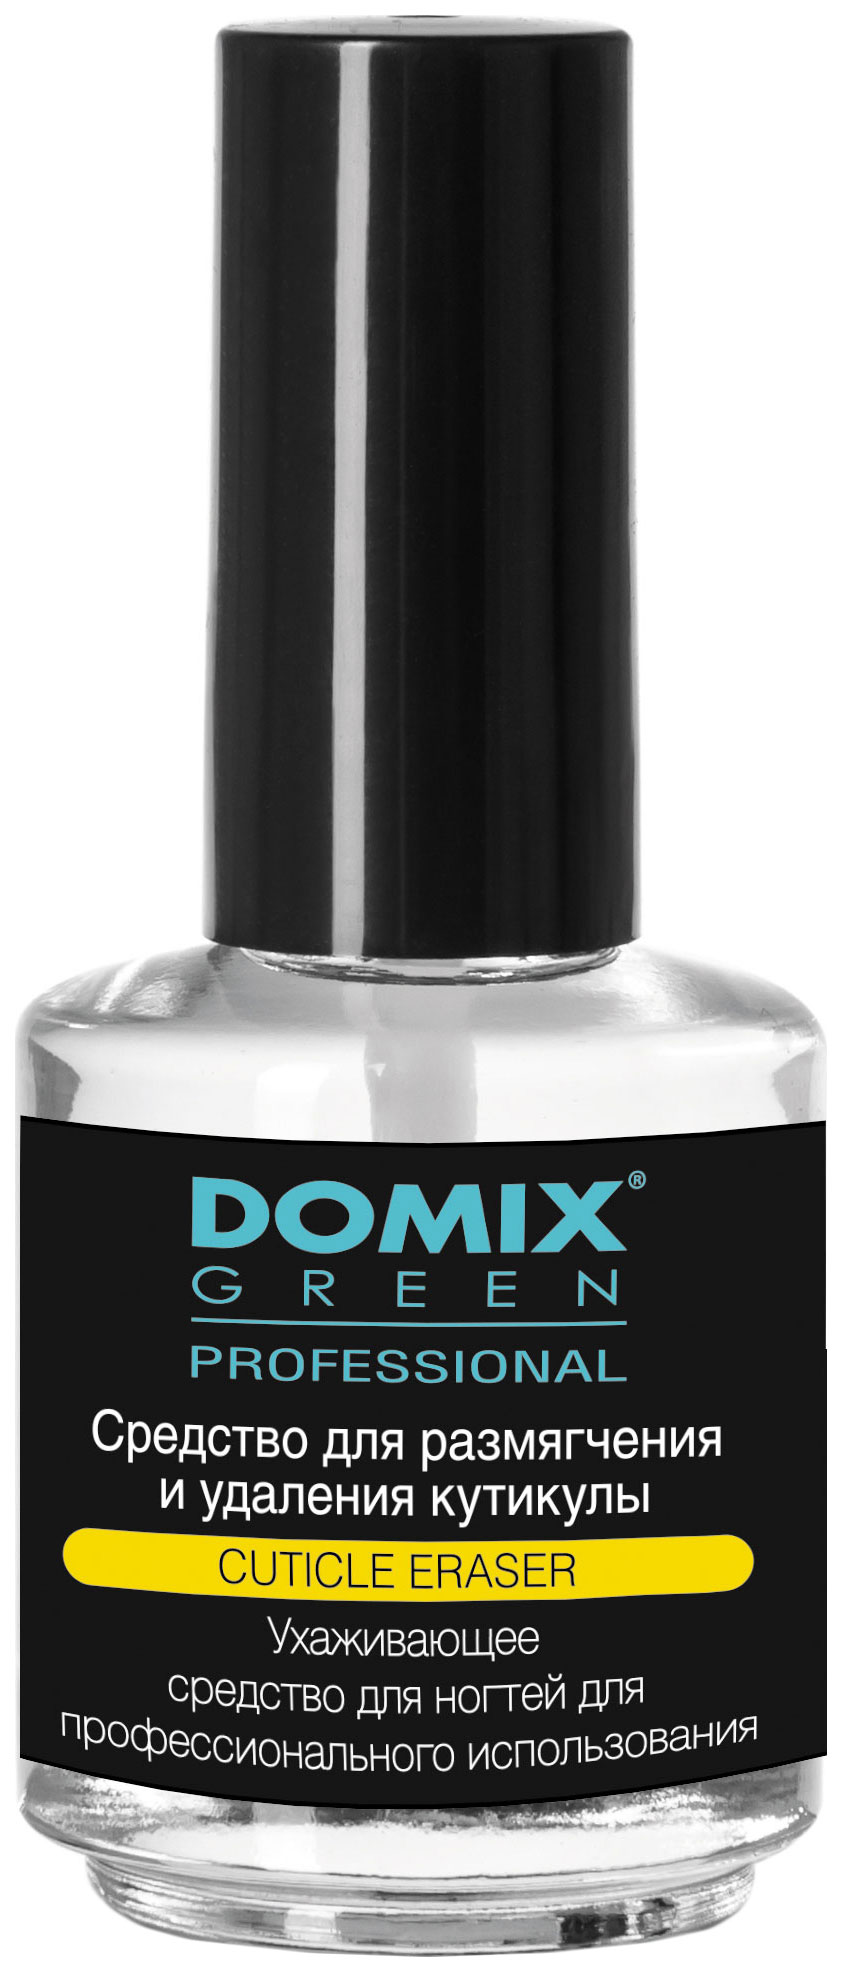 Средство для удаления кутикулы Domix Green Professional Cuticle Eraser 17 мл средство для удаления кутикулы domix green professional cuticle remover 70 мл